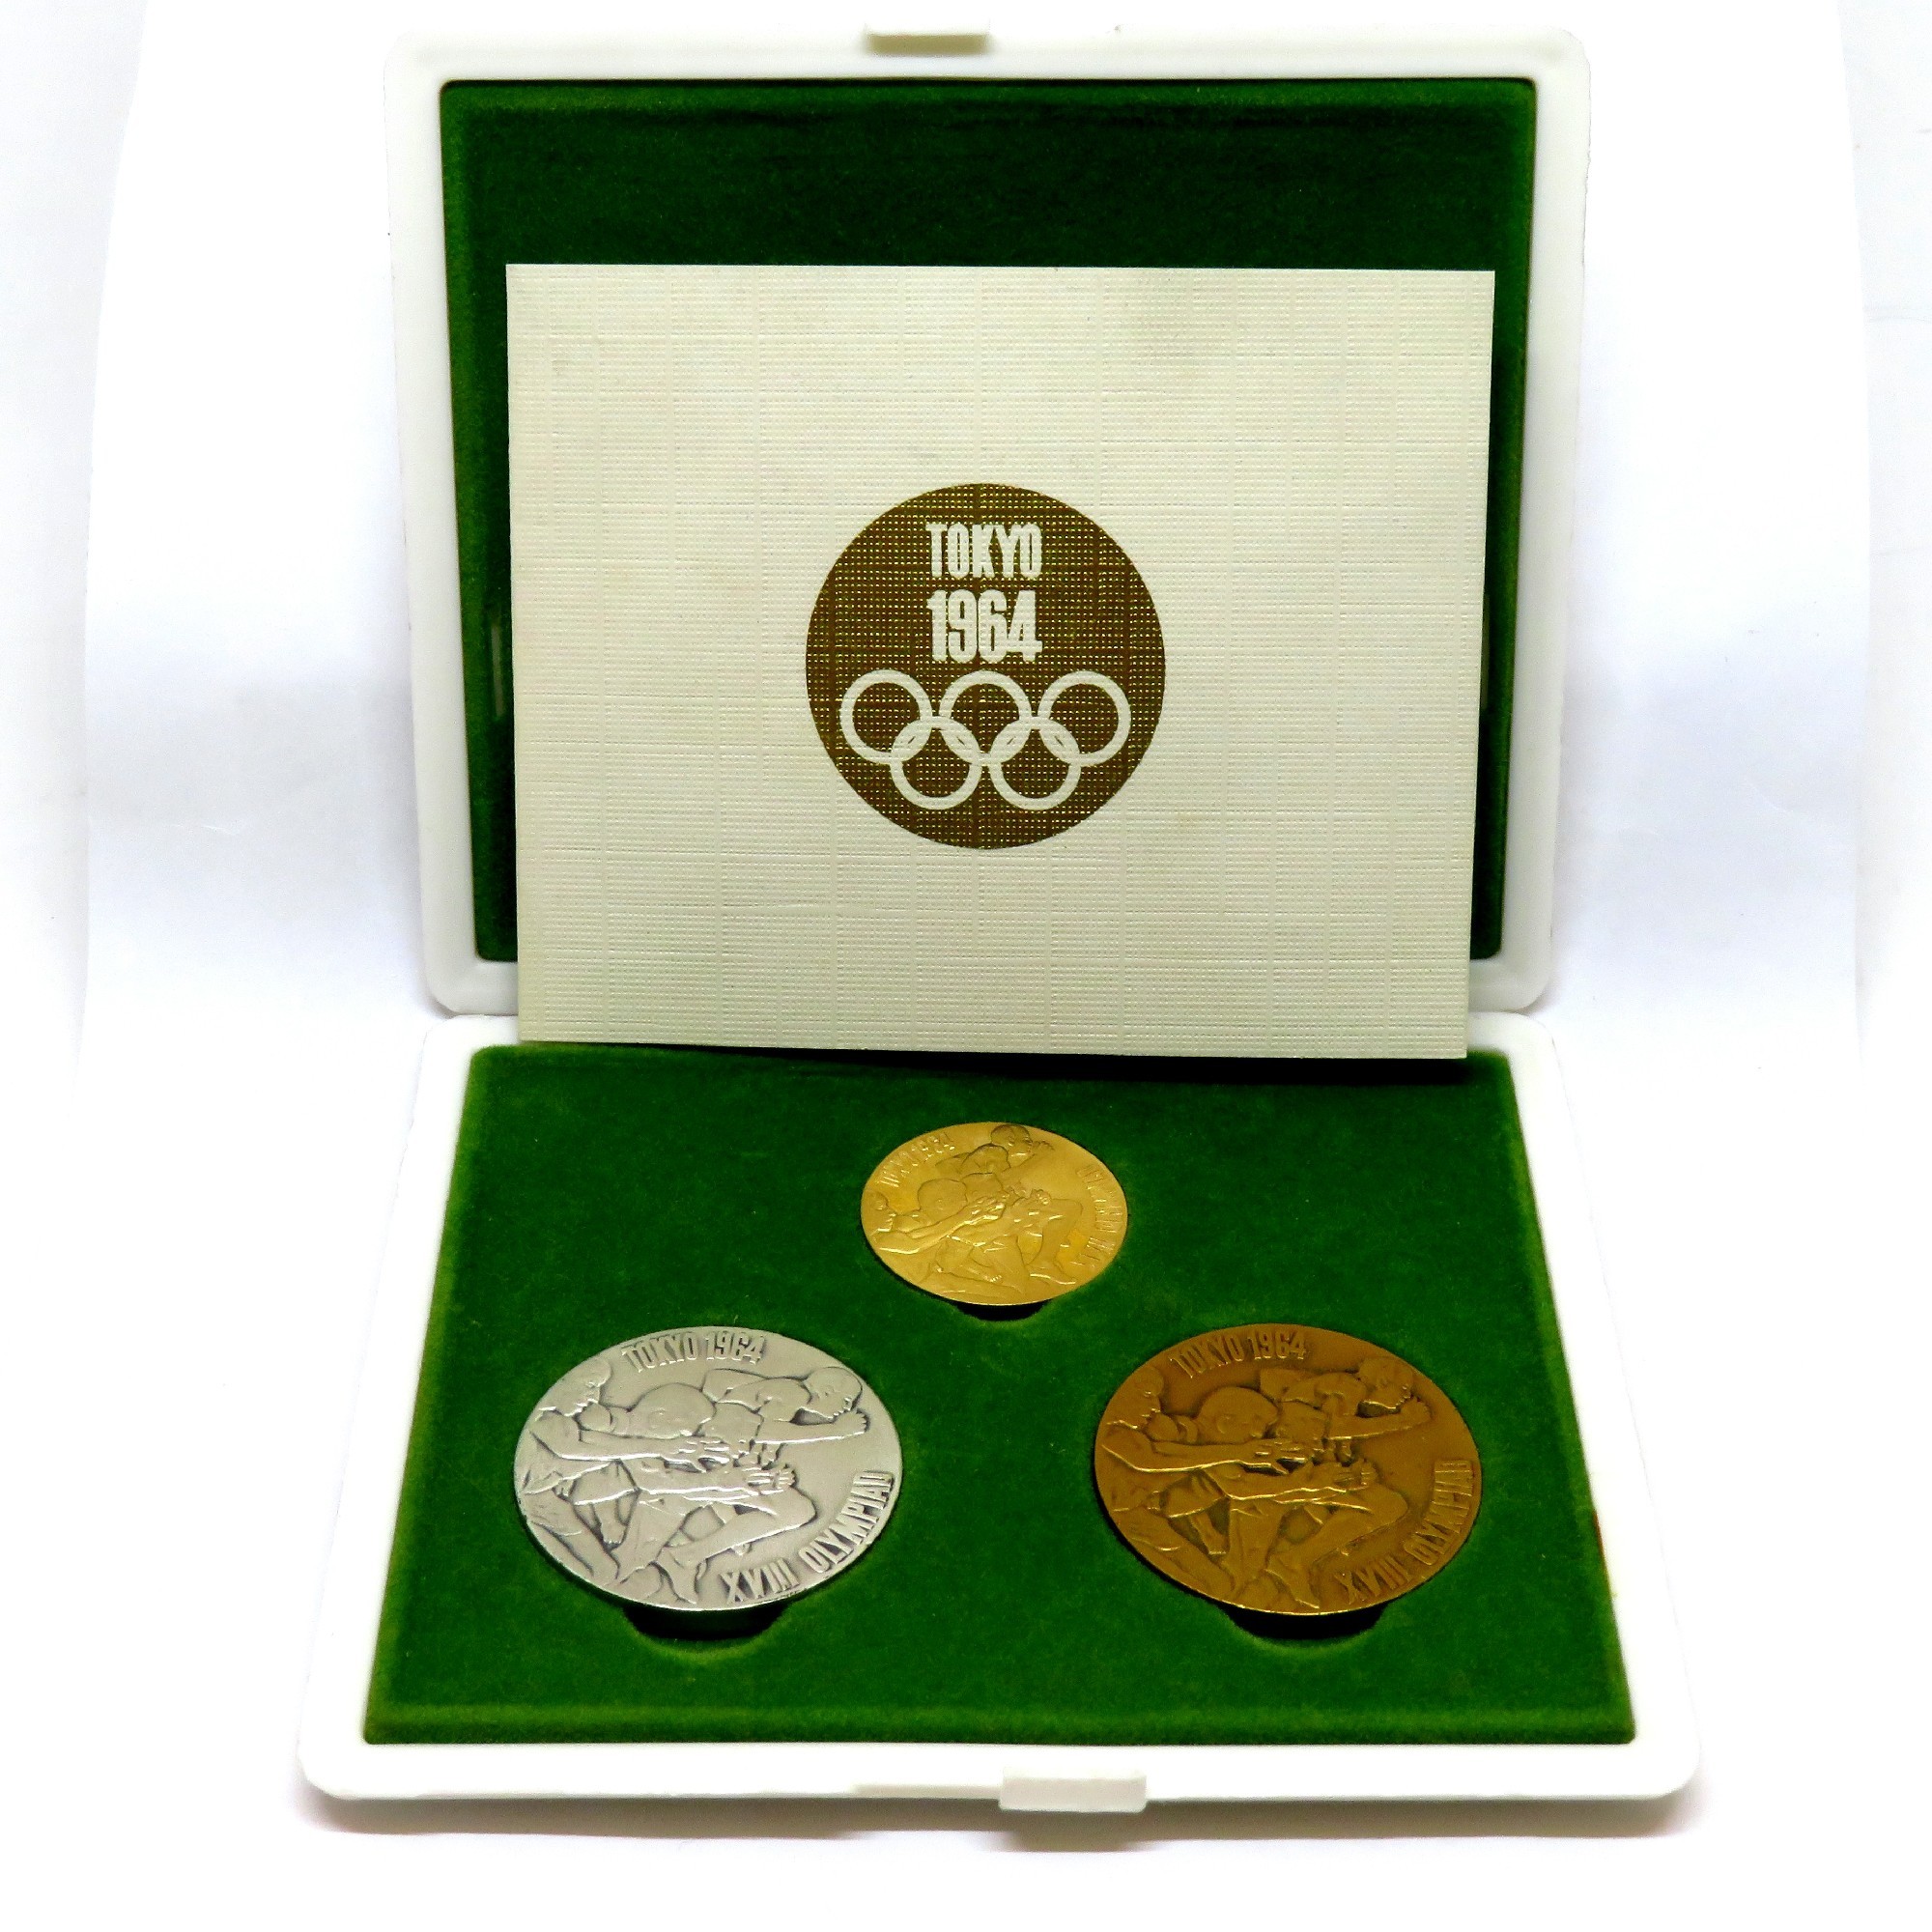 最高の品質の 1964年TOKYOオリンピック記念硬貨セット 旧貨幣/金貨